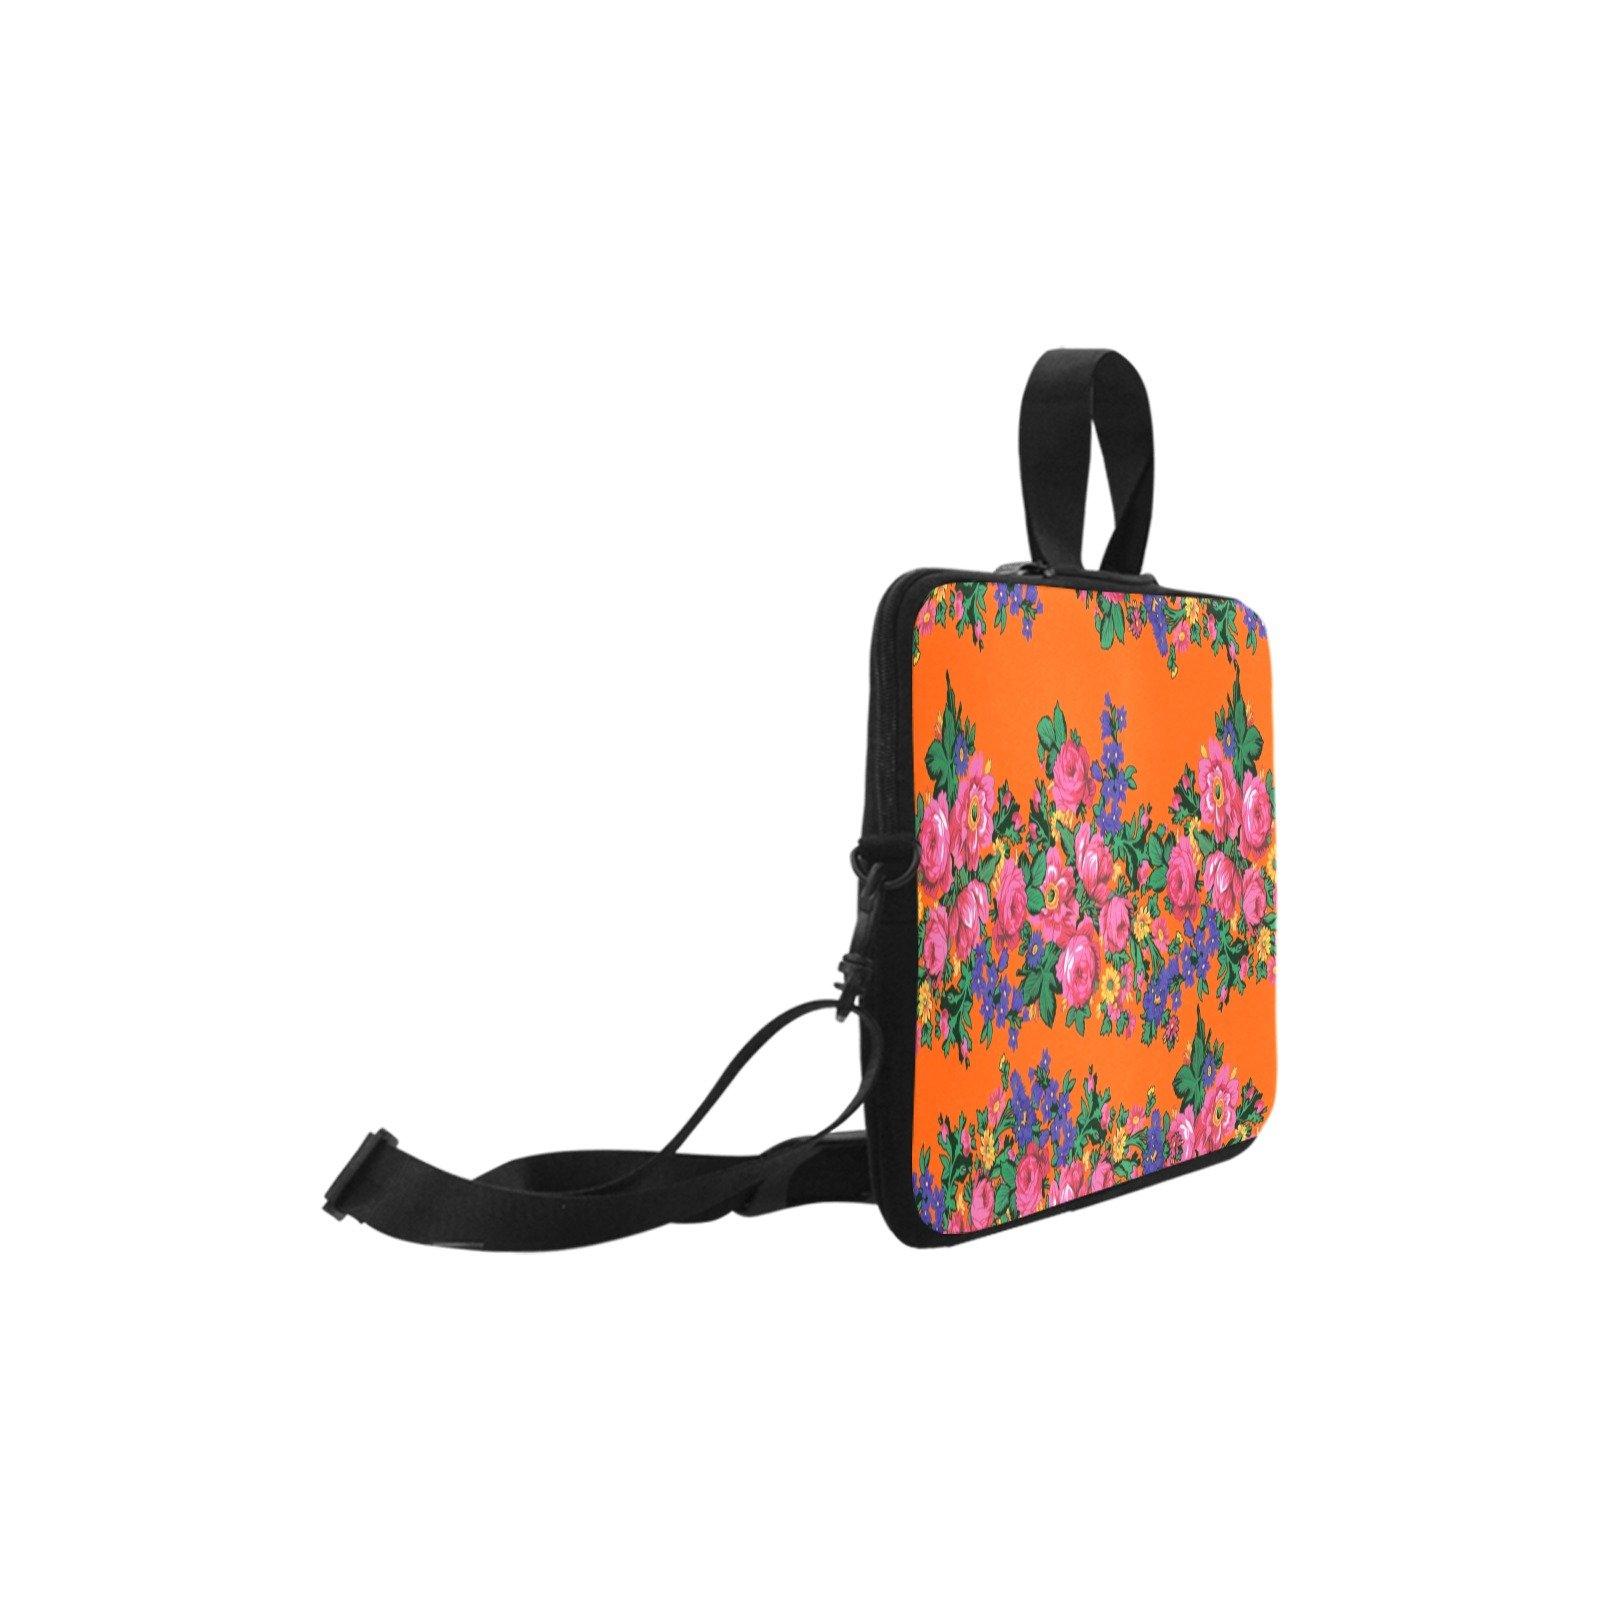 Kokum's Revenge Sierra Laptop Handbags 10" bag e-joyer 